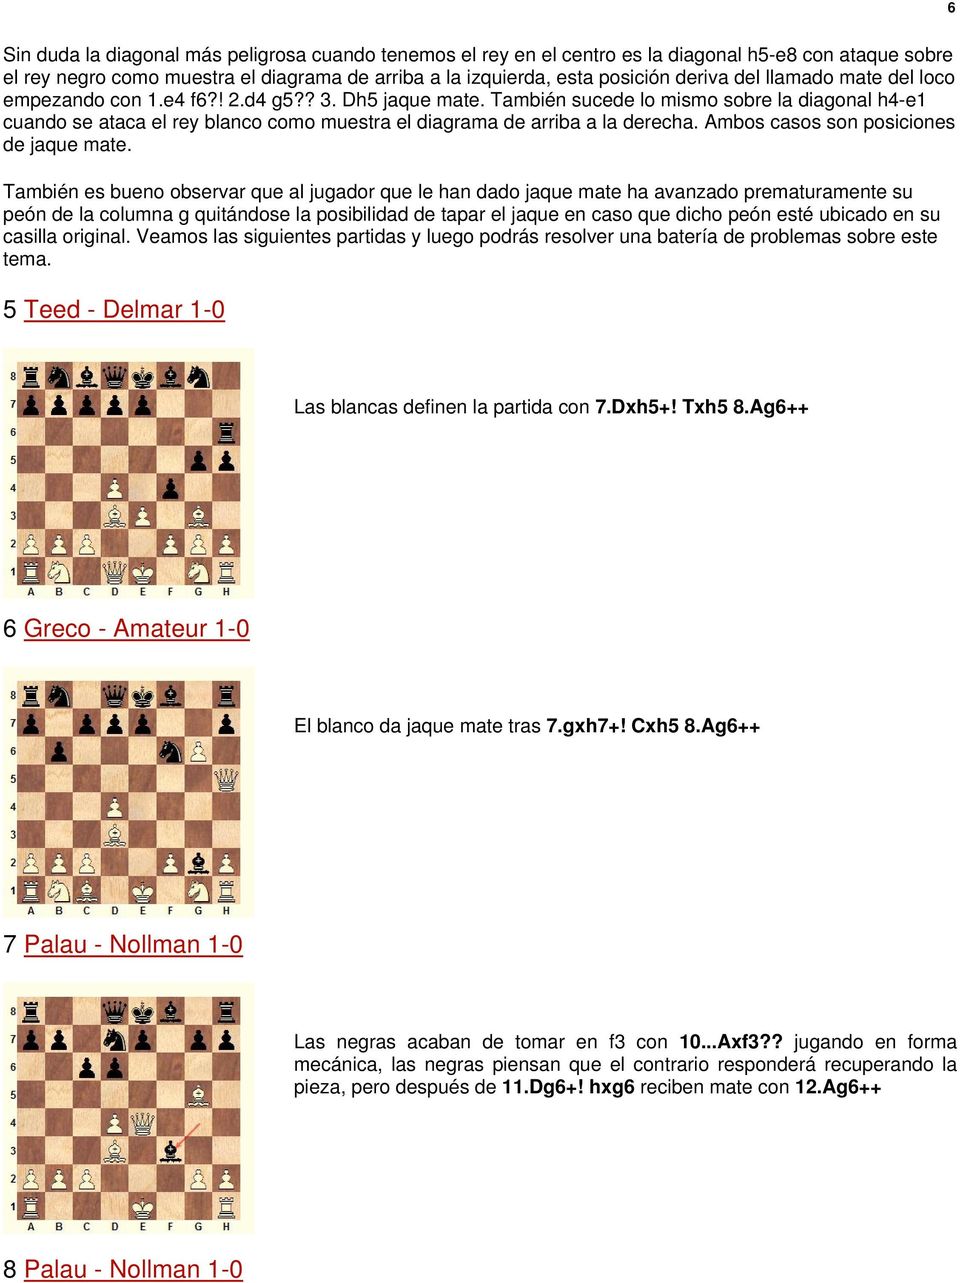 También sucede lo mismo sobre la diagonal h4-e1 cuando se ataca el rey blanco como muestra el diagrama de arriba a la derecha. Ambos casos son posiciones de jaque mate.